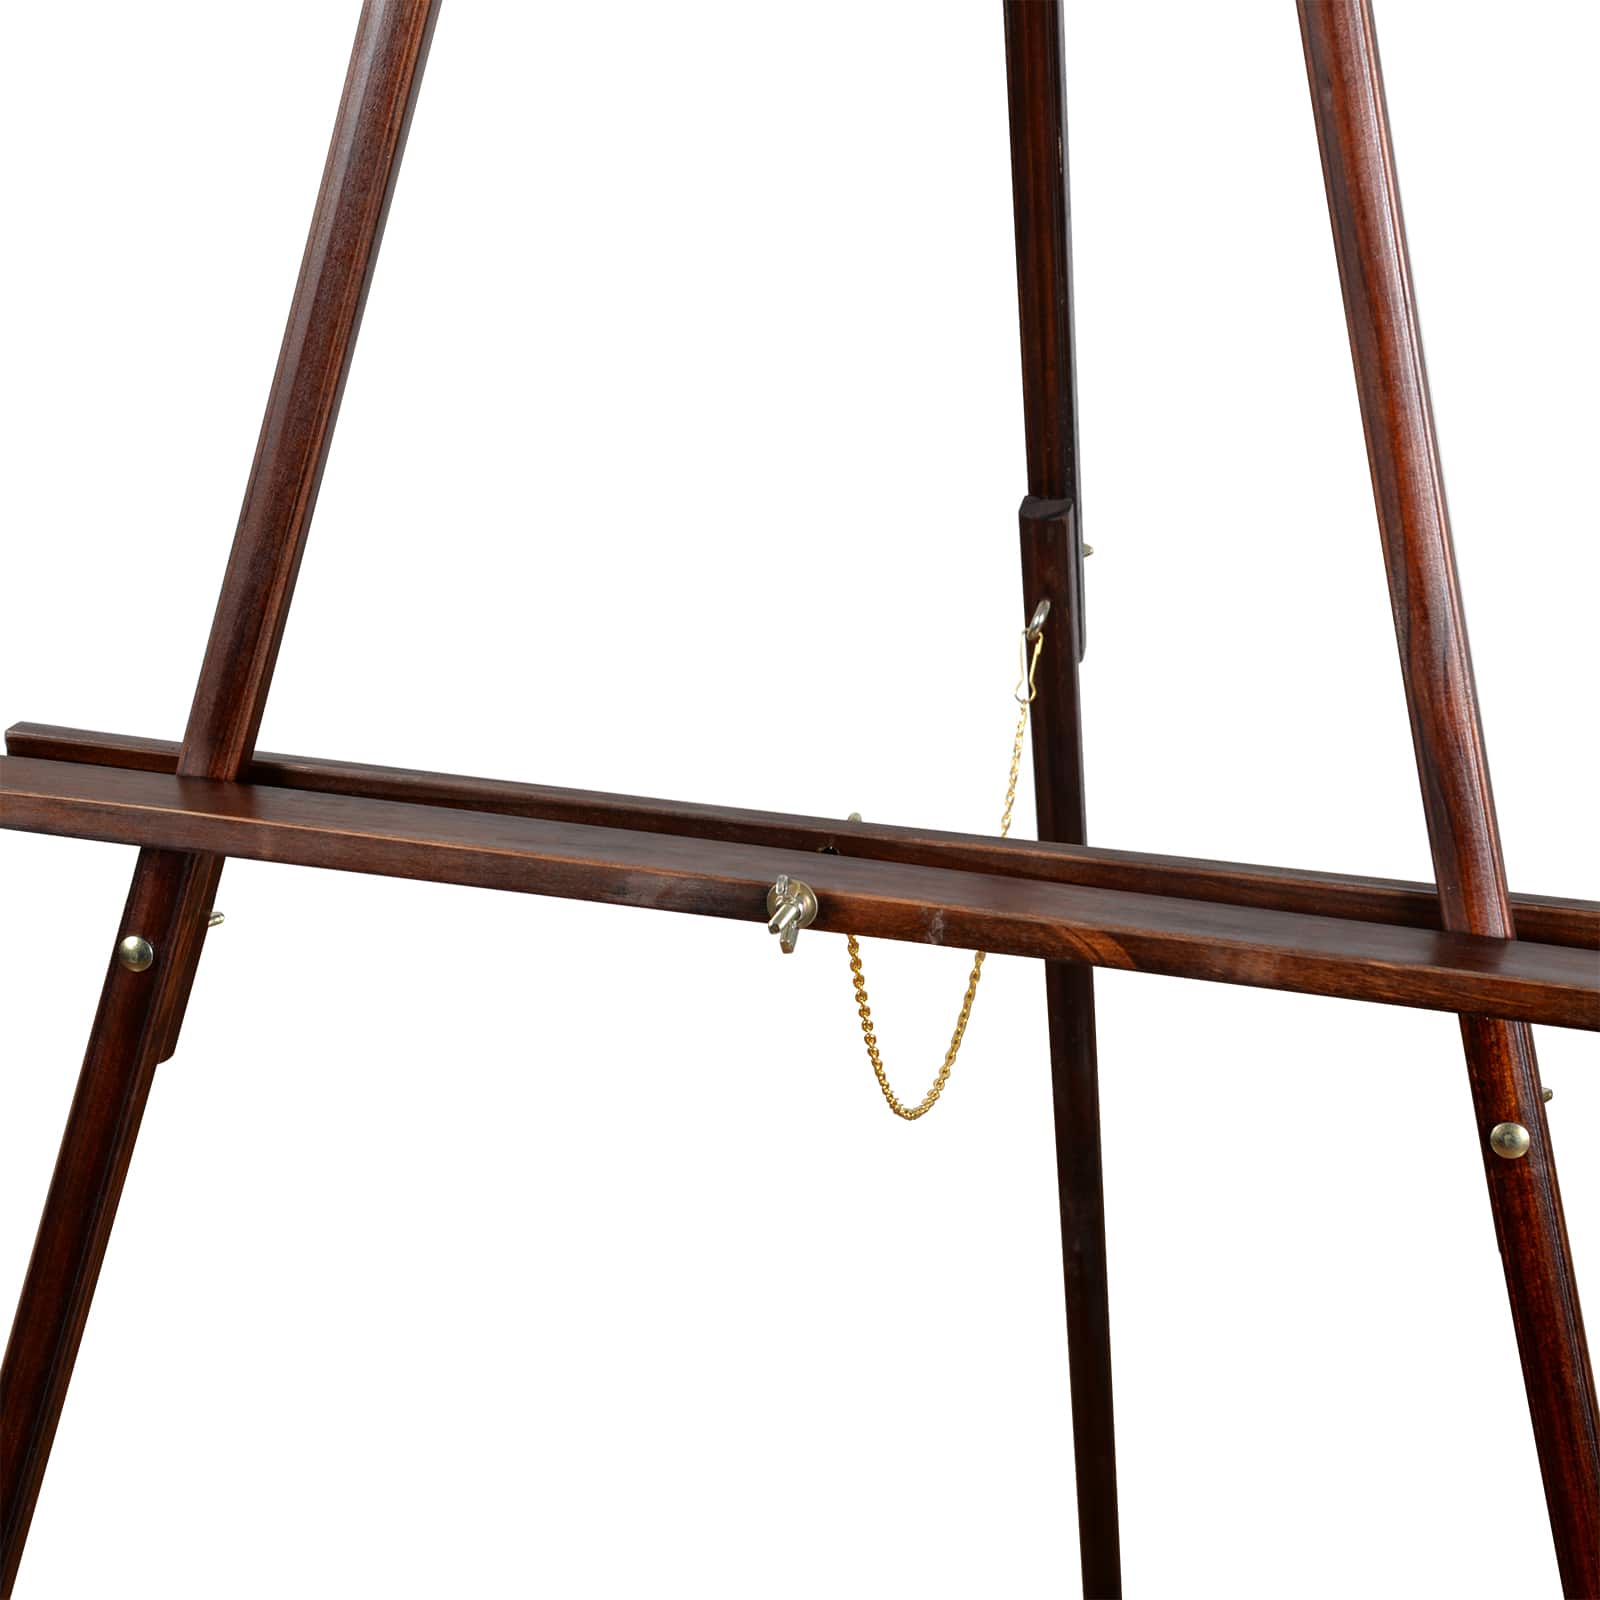 Vintage Brown Display Easel By Artist's Loft®